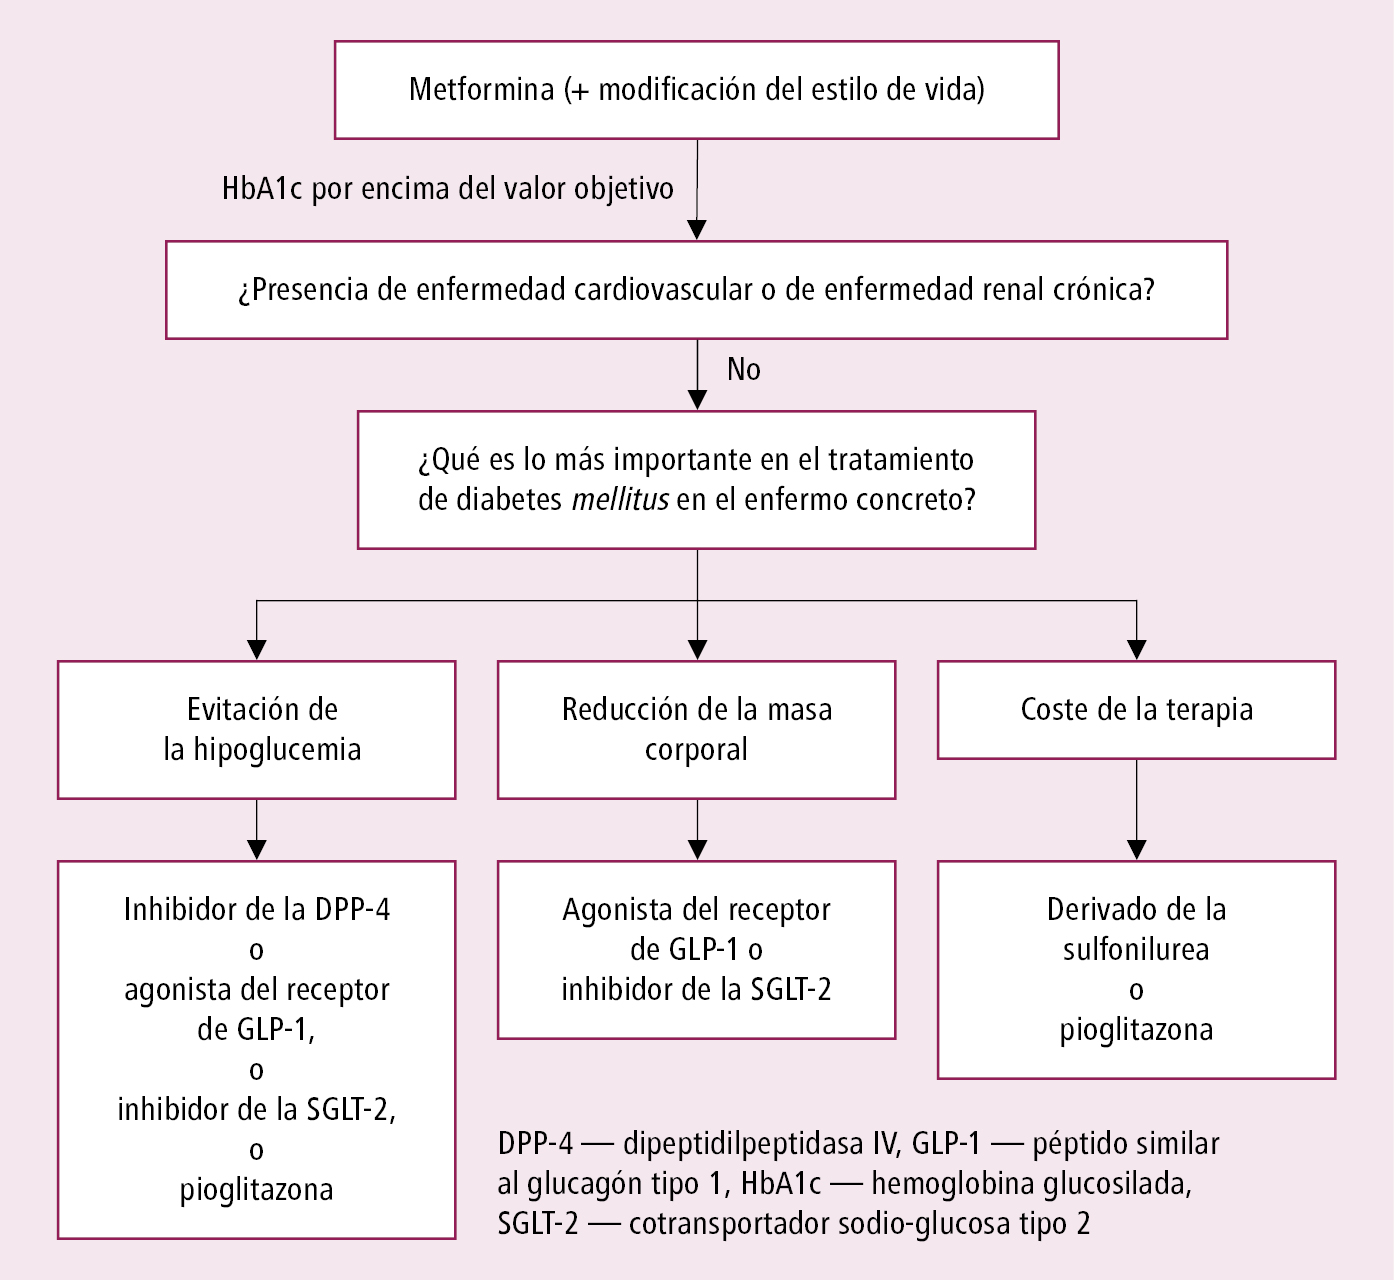    Fig. 14.1-3.  Algoritmo de selección del segundo fármaco, añadido a la metformina, en diabetes tipo 2, en pacientes sin enfermedad cardiovascular ni enfermedad renal (ADA 2022, modificado) 